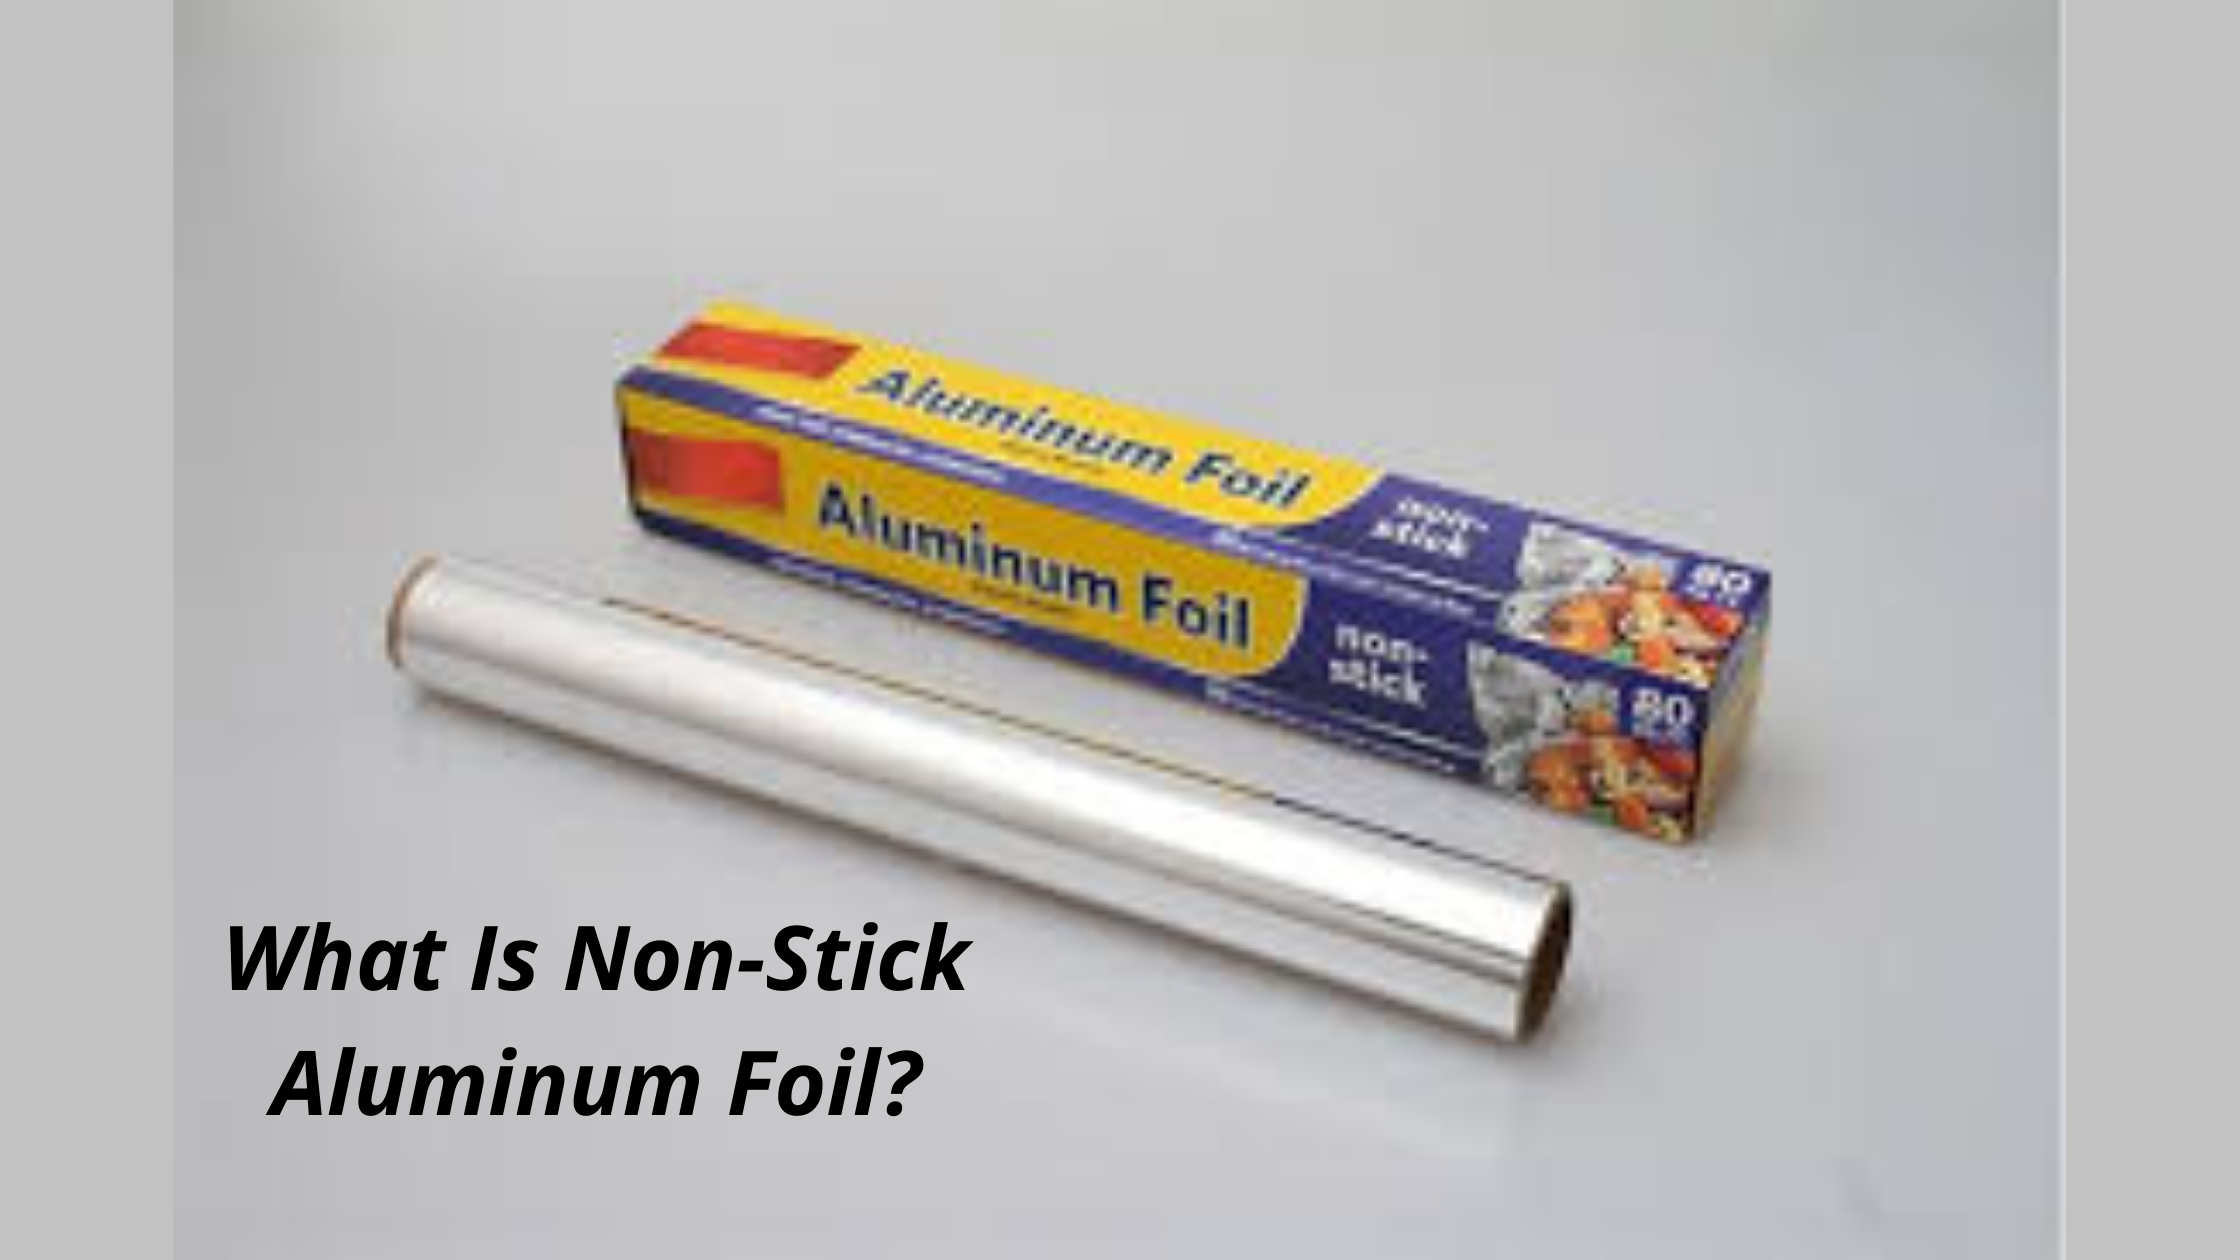 What Is Non-Stick Aluminum Foil?